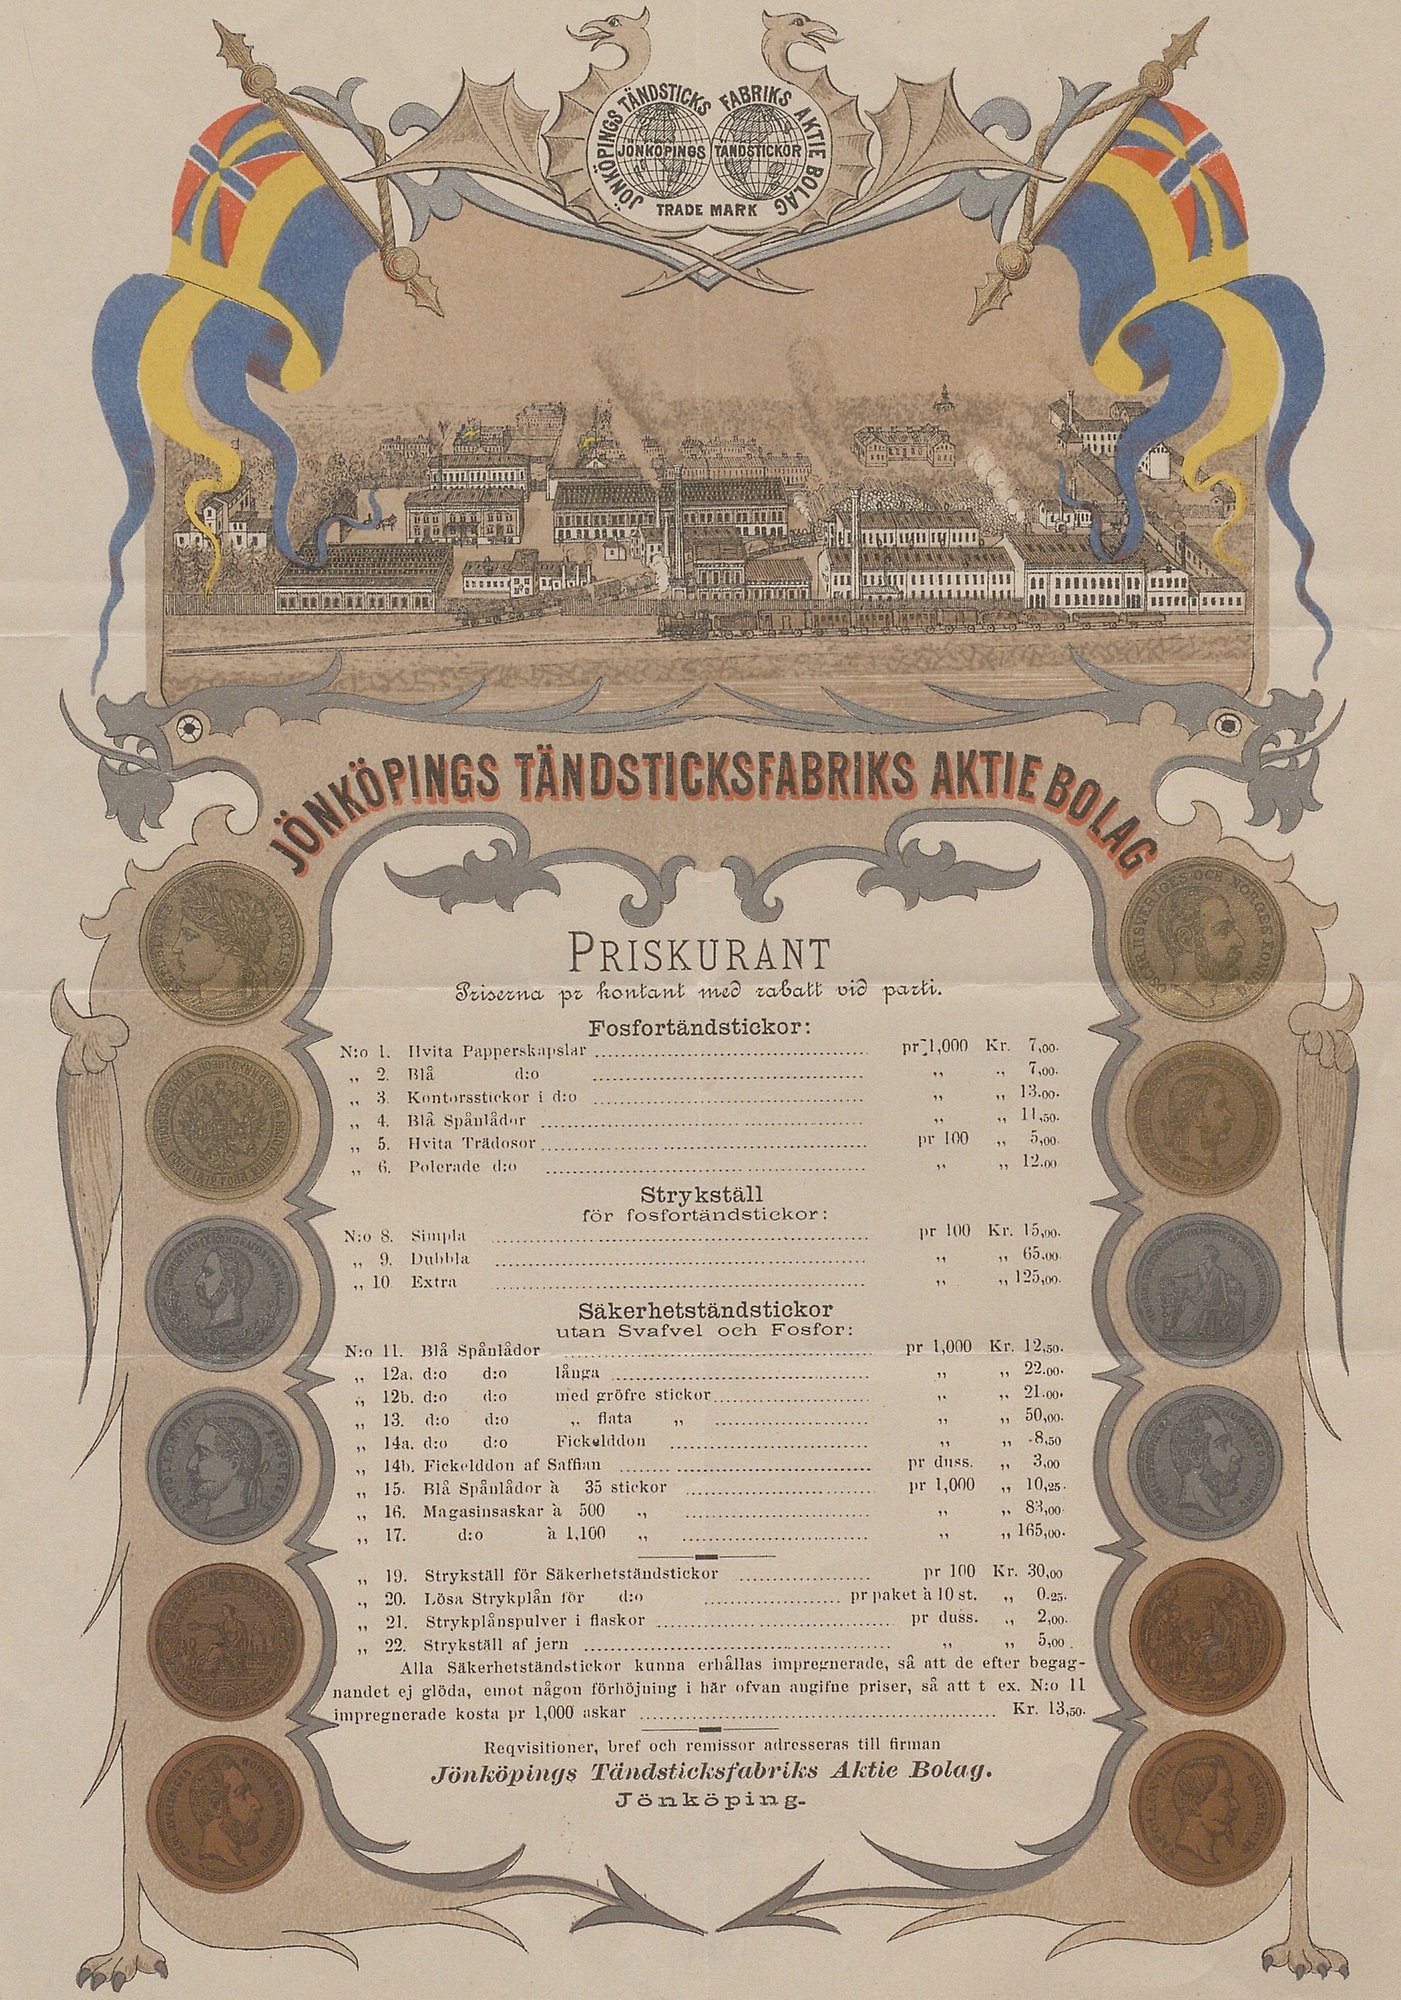 Rikt dekorerad prislista för Jönköpings tändsticksfabrik. Medaljer ramar in produktlistan och längst upp syns en bild av fabriken.